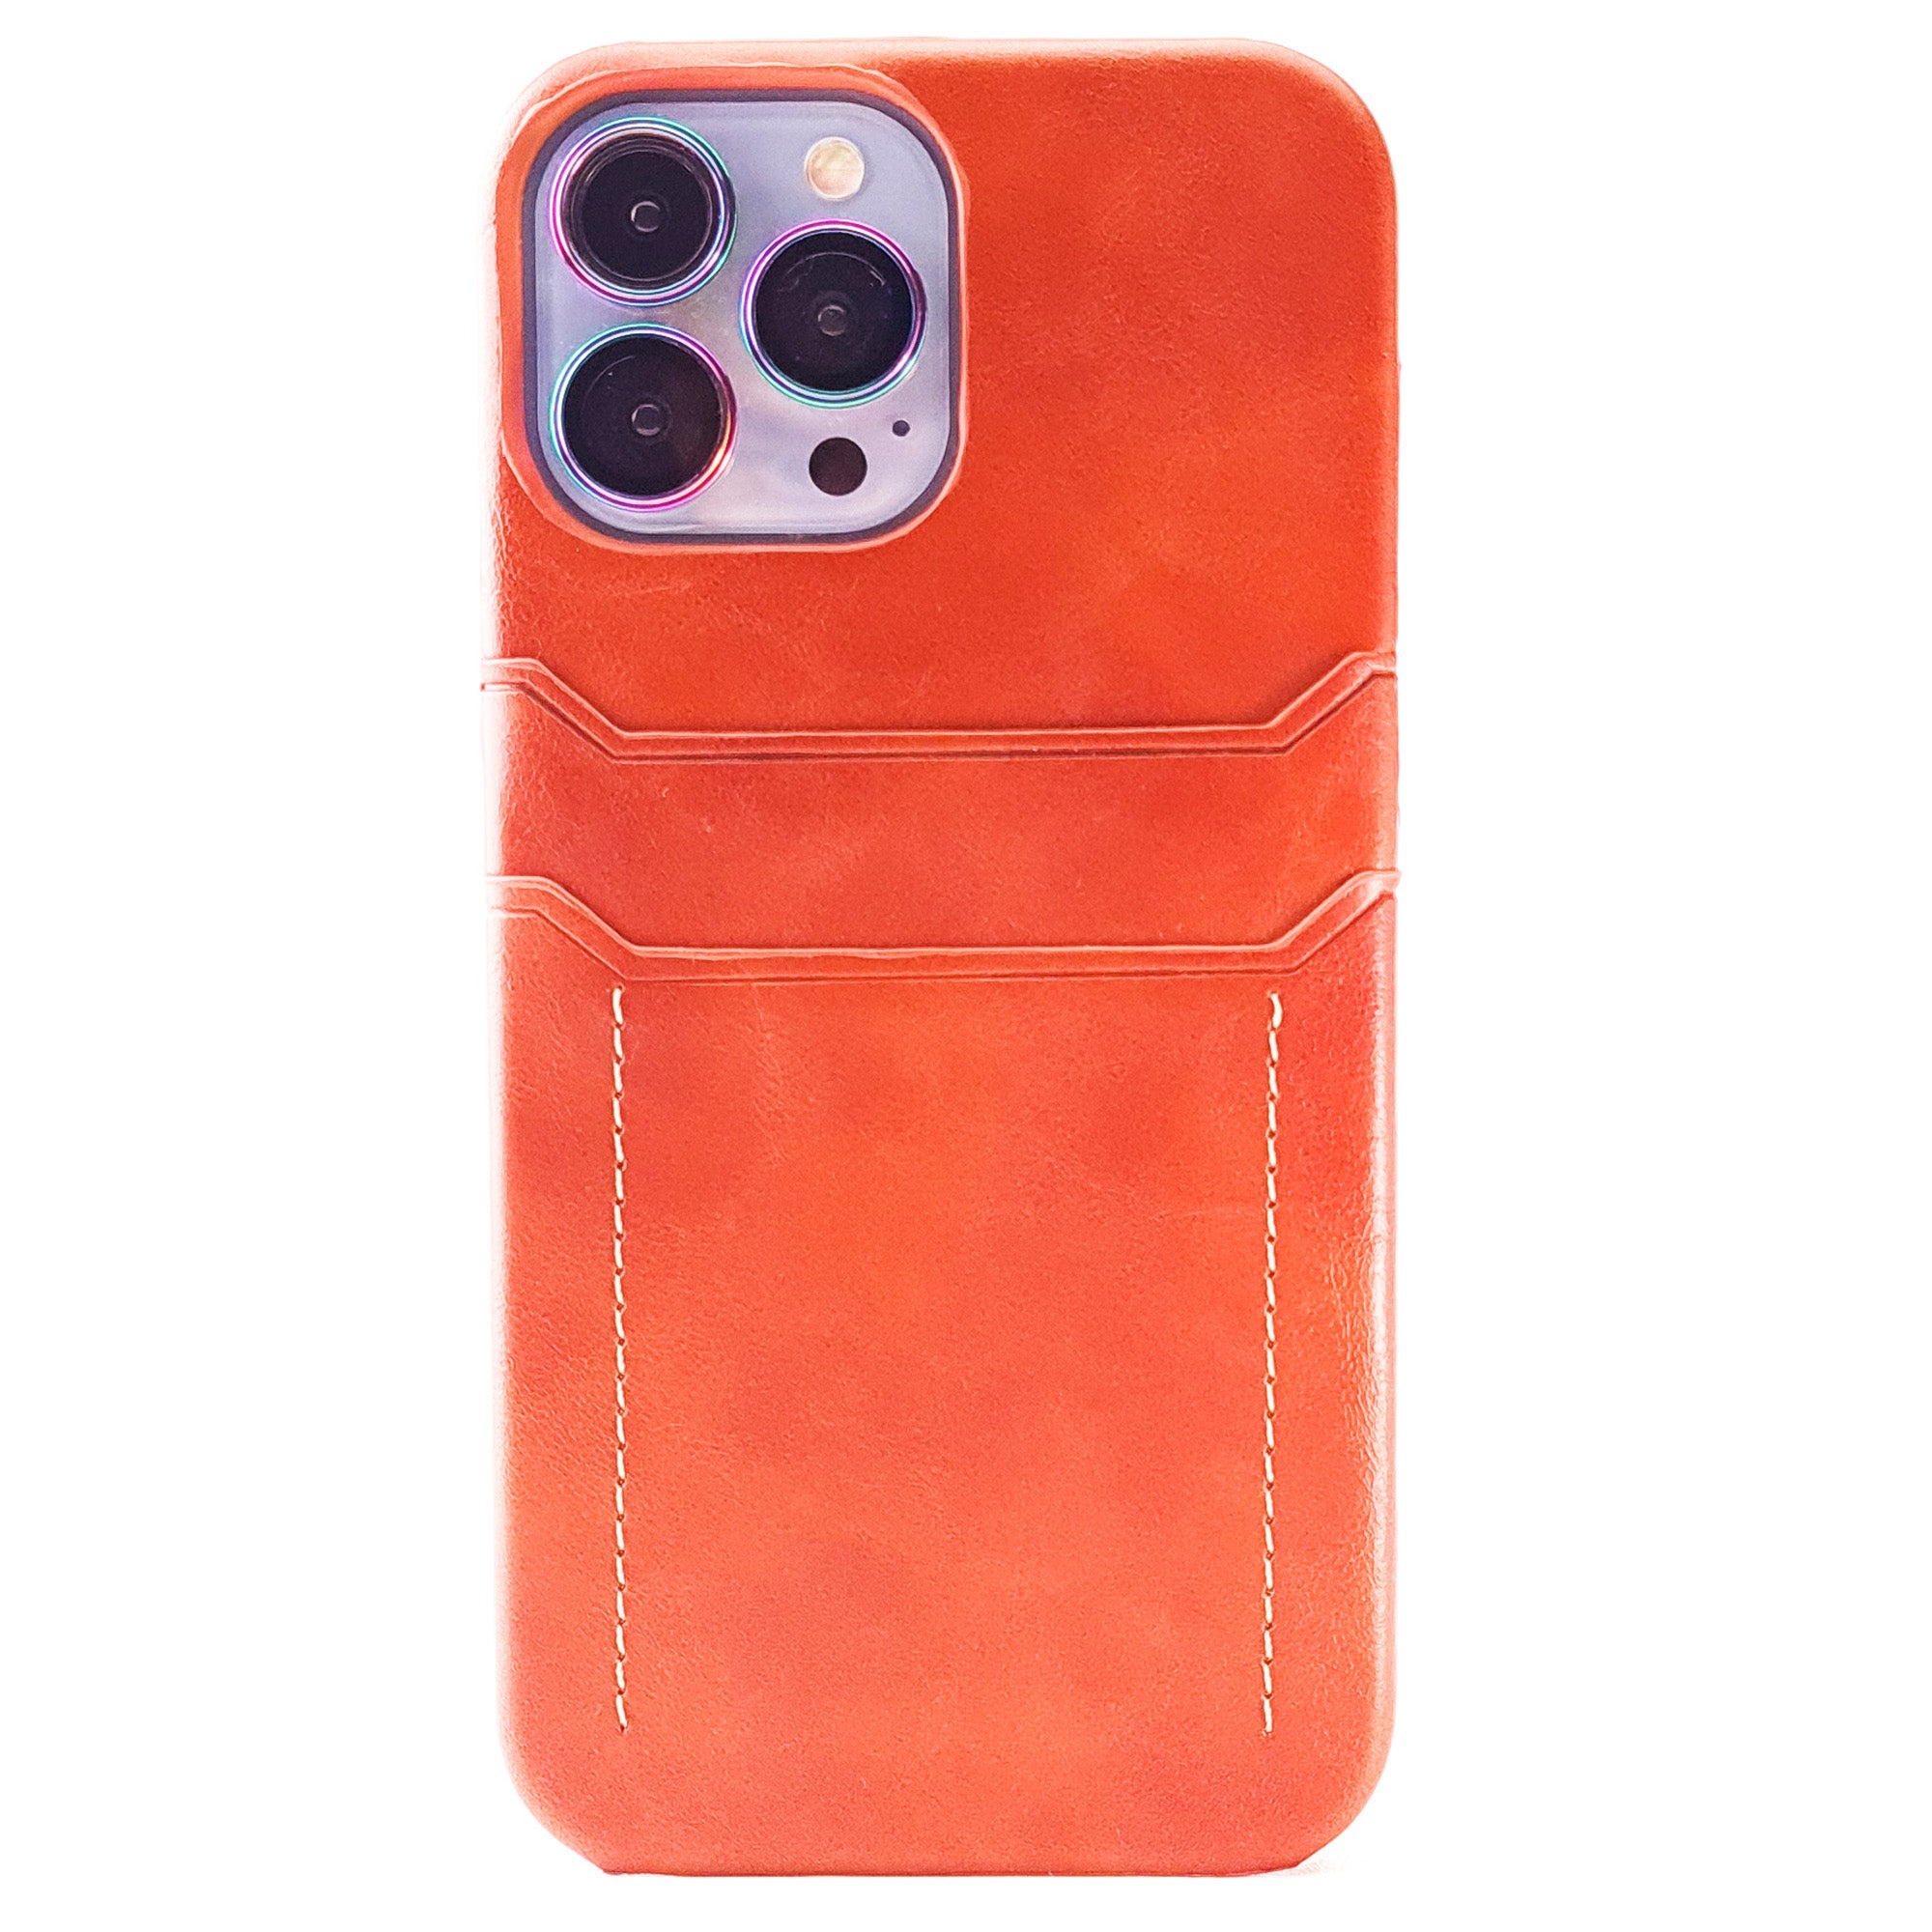 Case iPhone 11 / Pro / Max Slim Leather CA-15